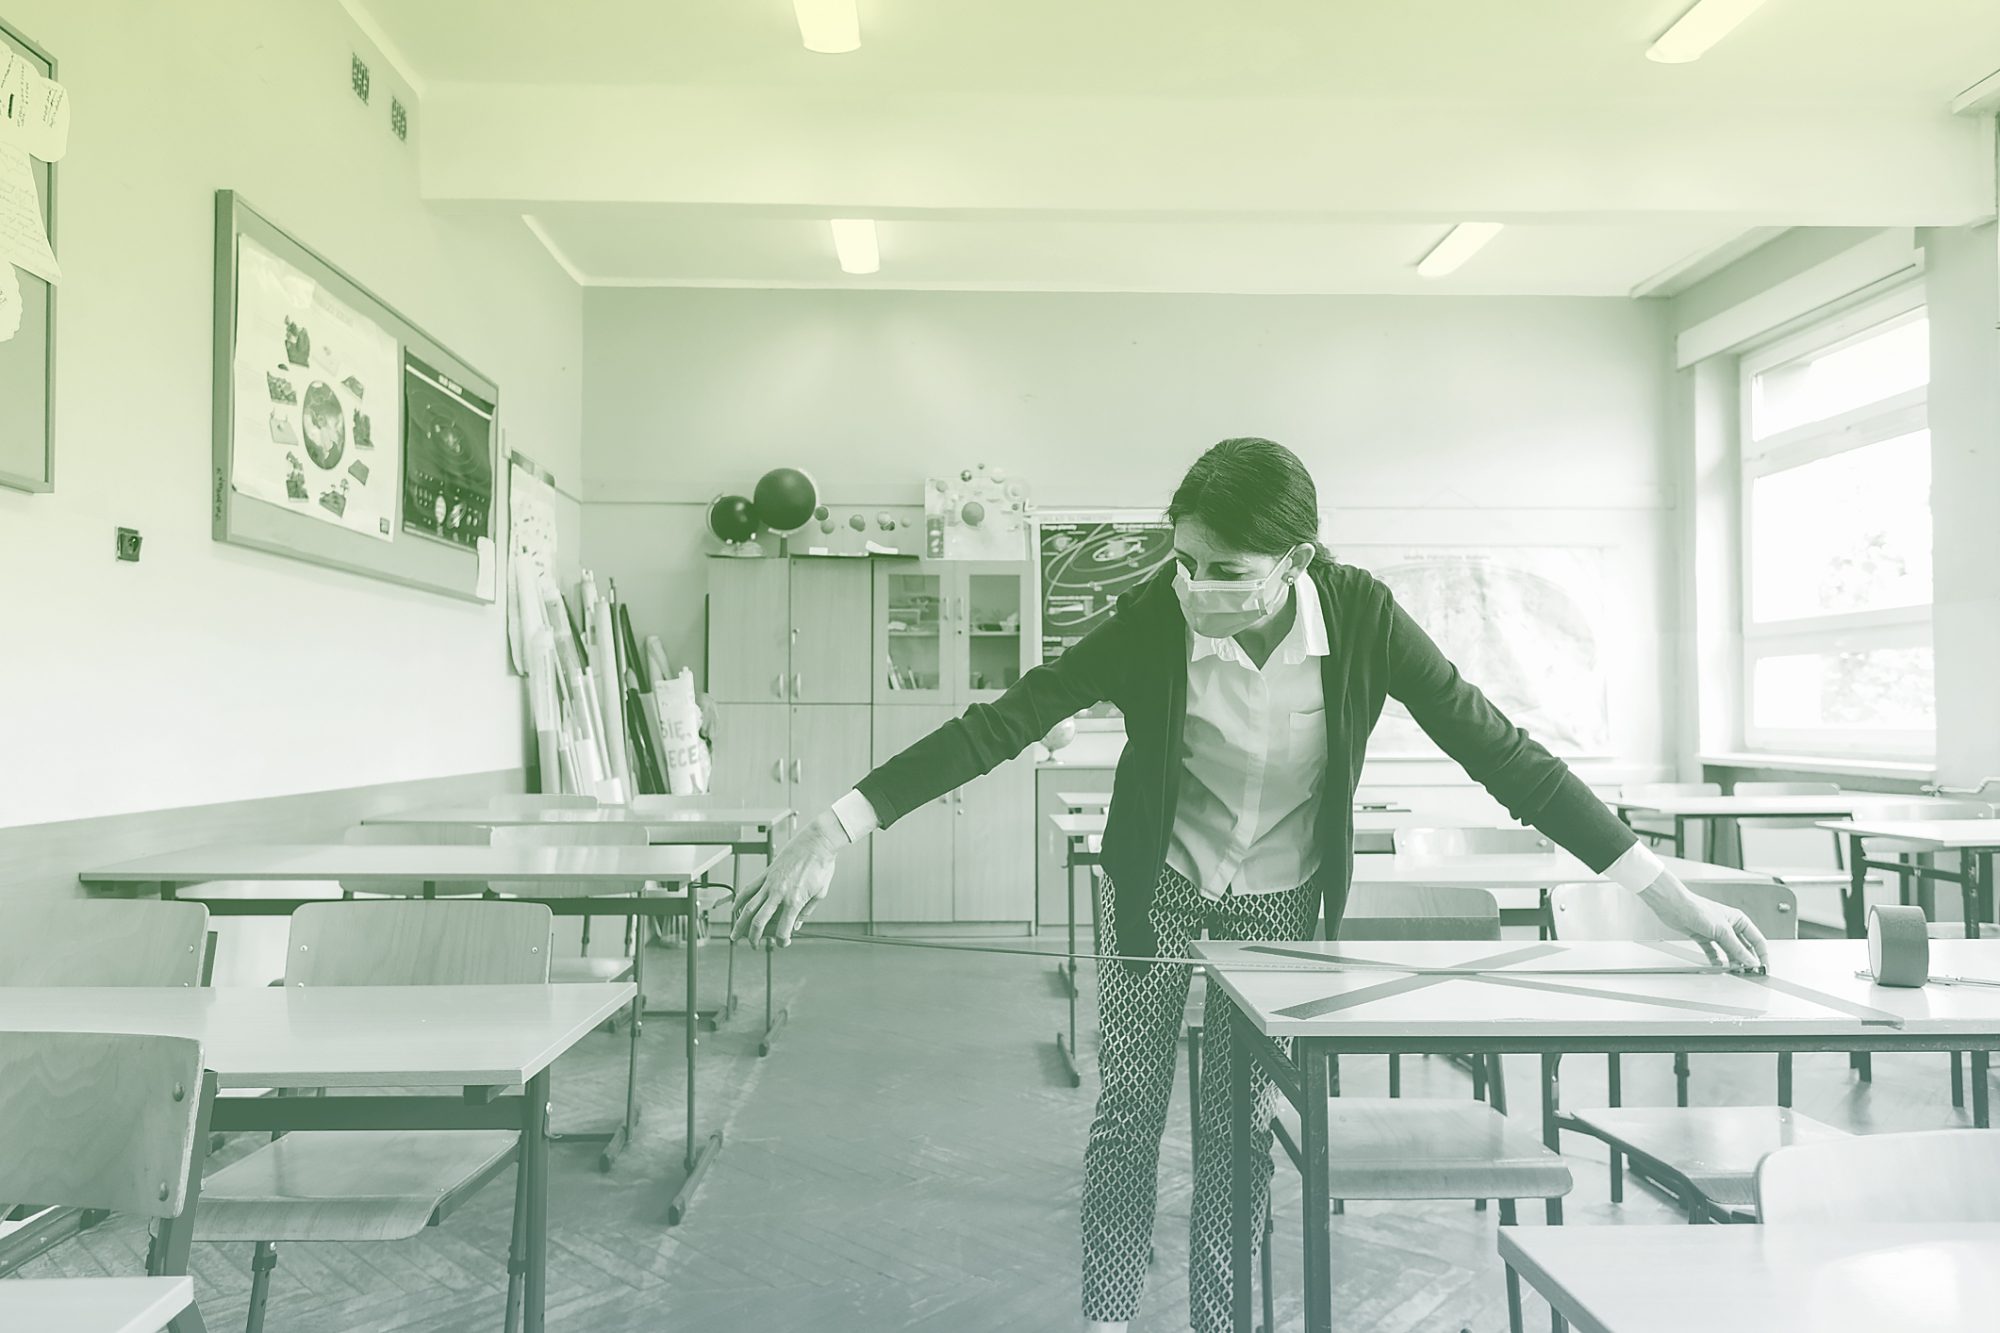 teacher measures distance between desks in classroom